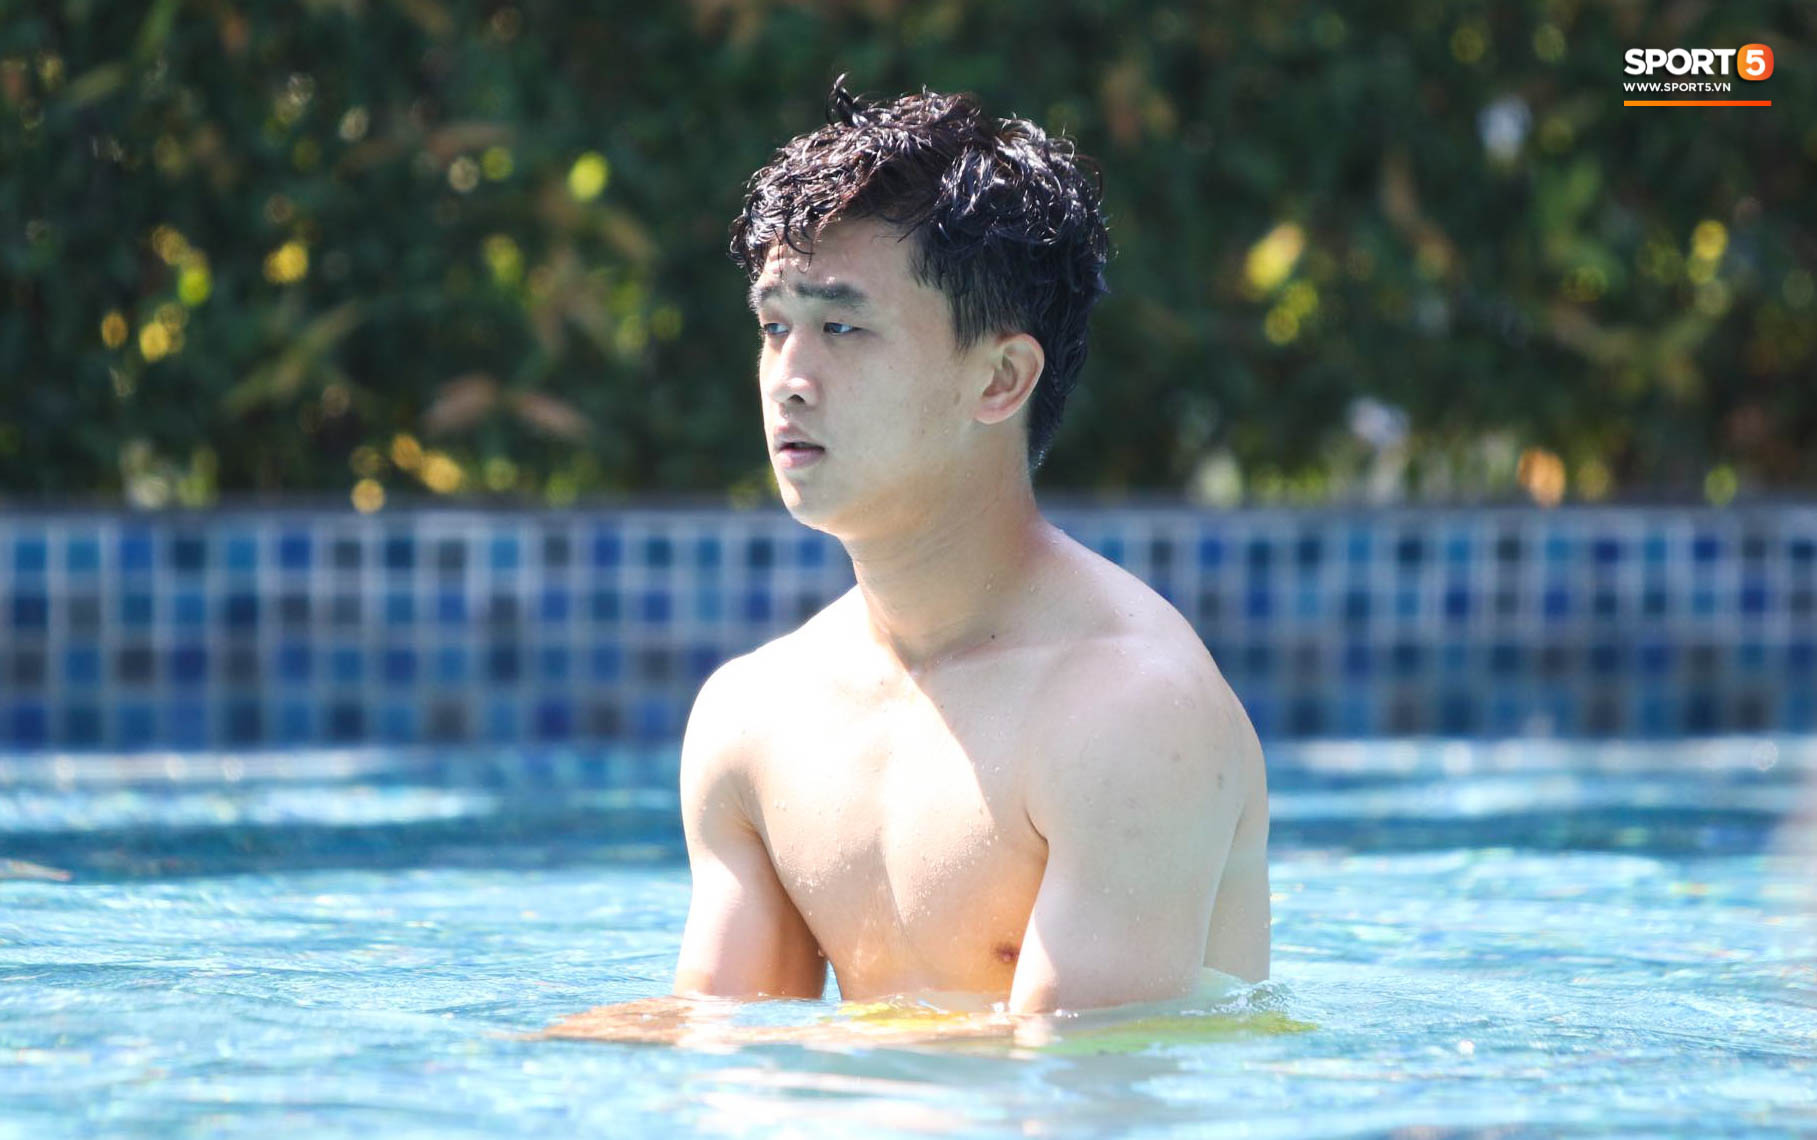 Tiến Linh cover xung quanh anh toàn là nước của Đen Vâu, tuyển thủ U23 Việt Nam khoe body săn chắc - Ảnh 11.